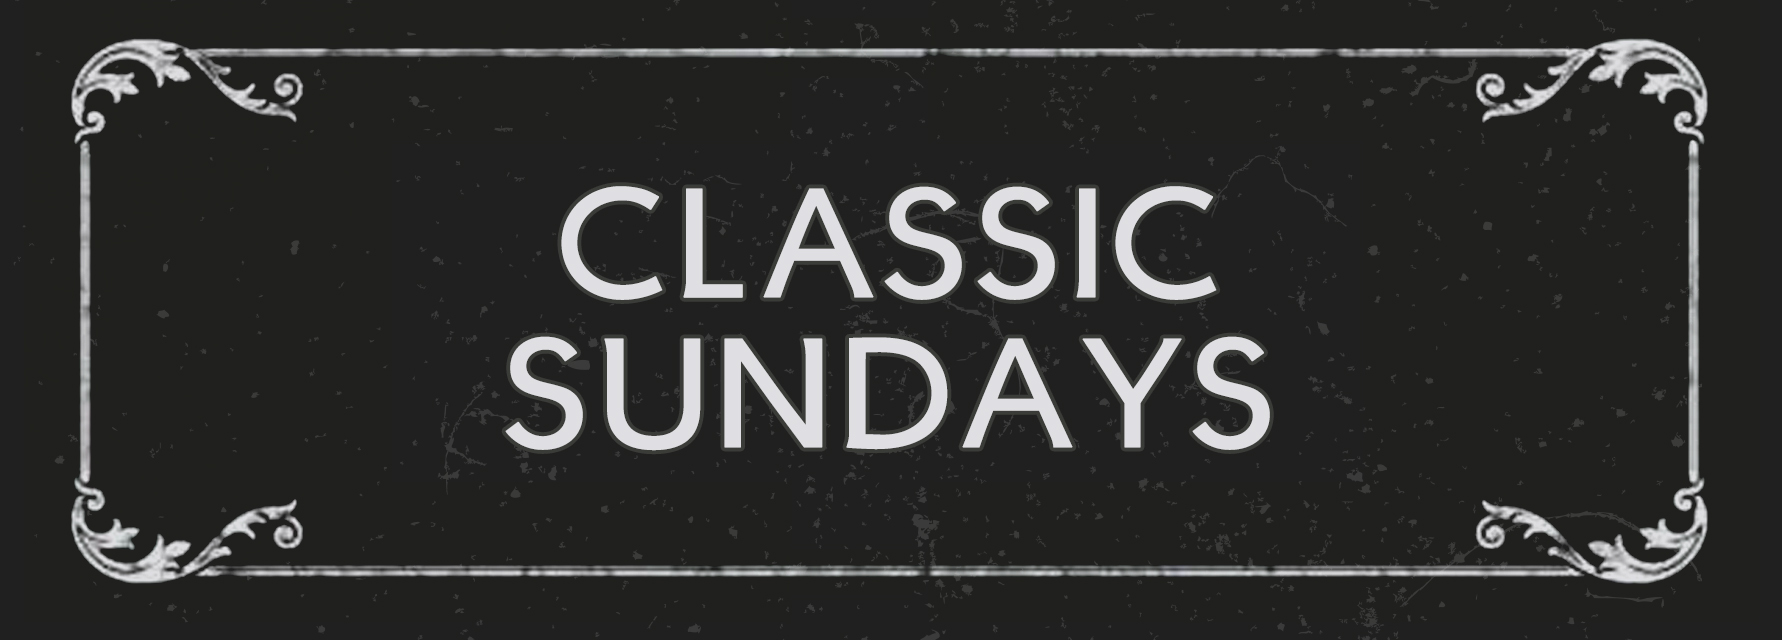 Classic Sundays logo 1930s style